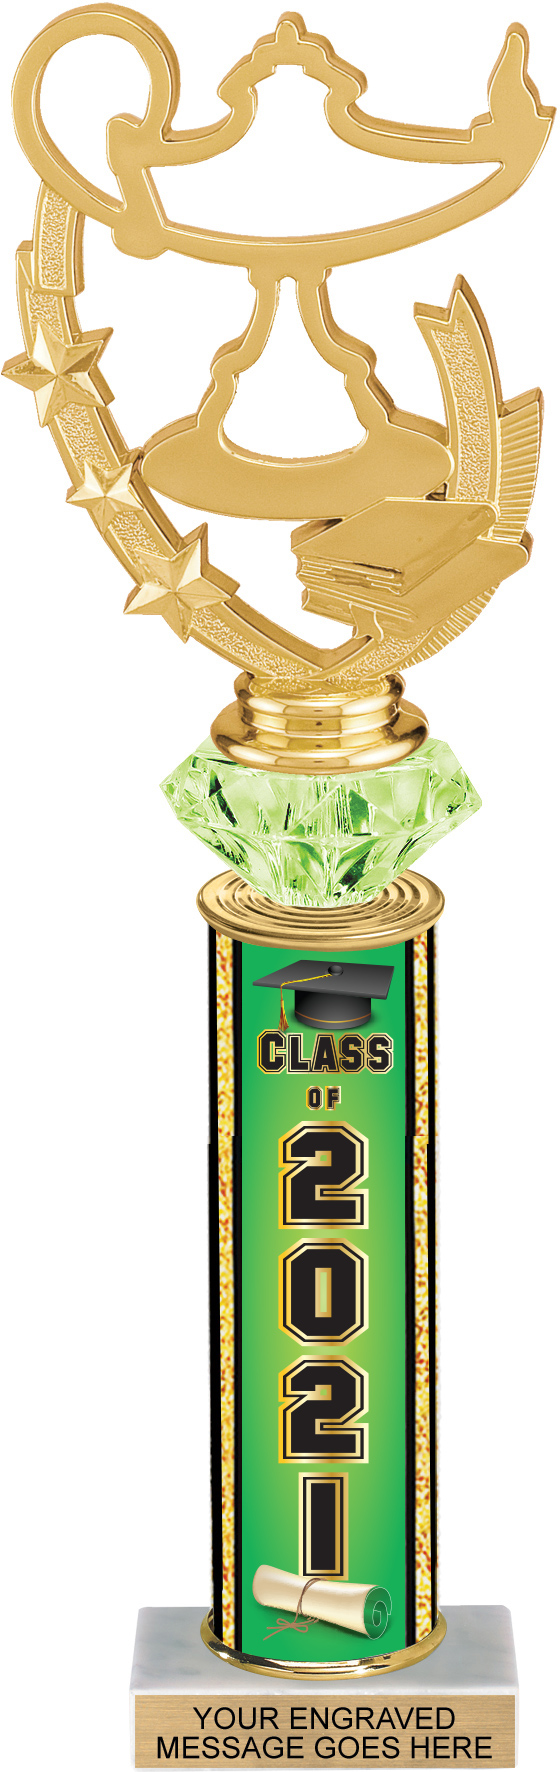 Diamond Riser 13 inch Class of 2021 Column Trophy